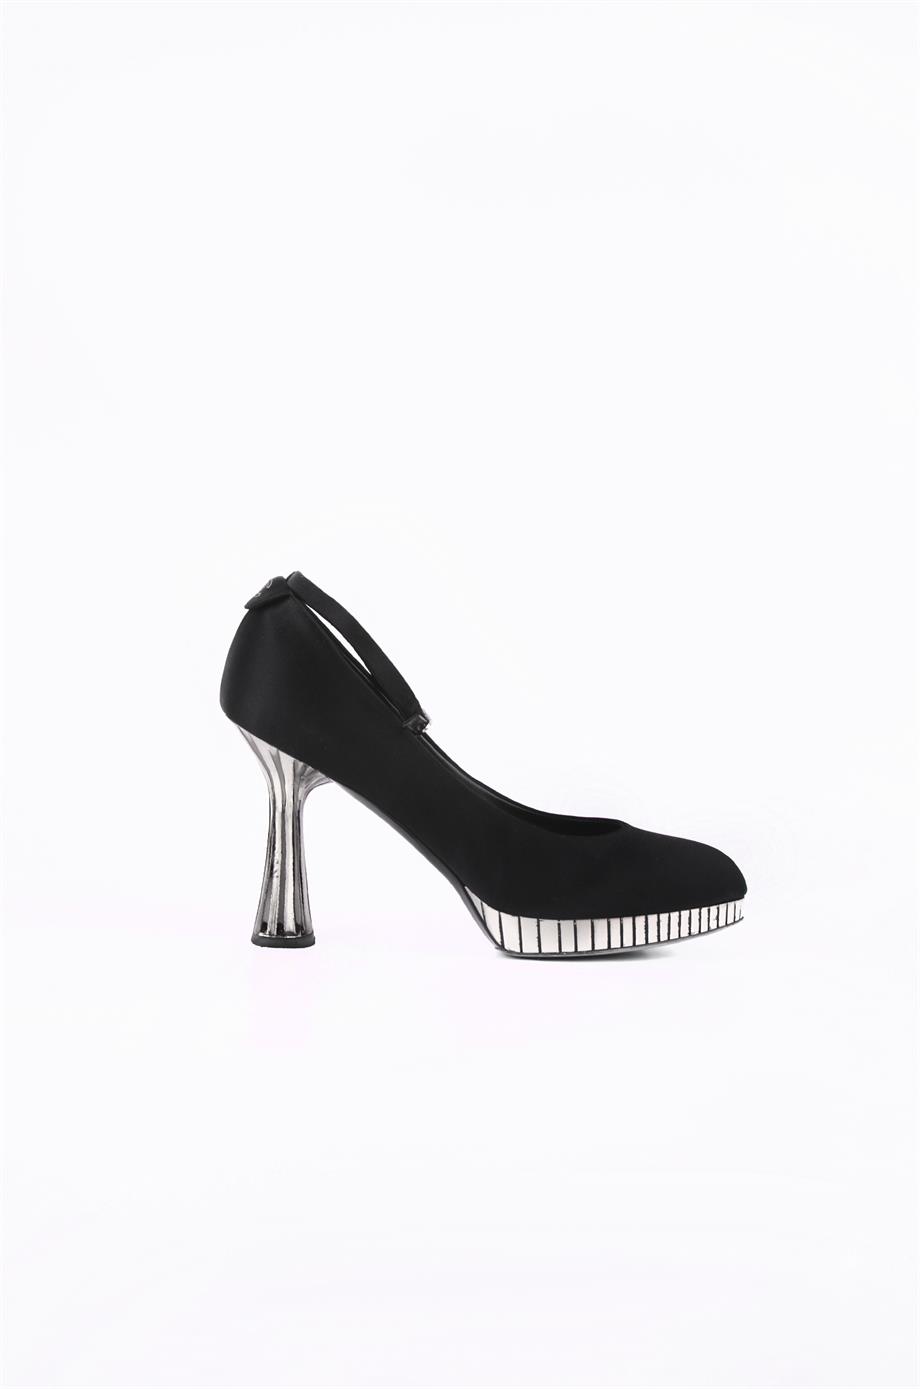 Chanel Siyah Renk 41 Beden Kadın Topuklu Ayakkabı